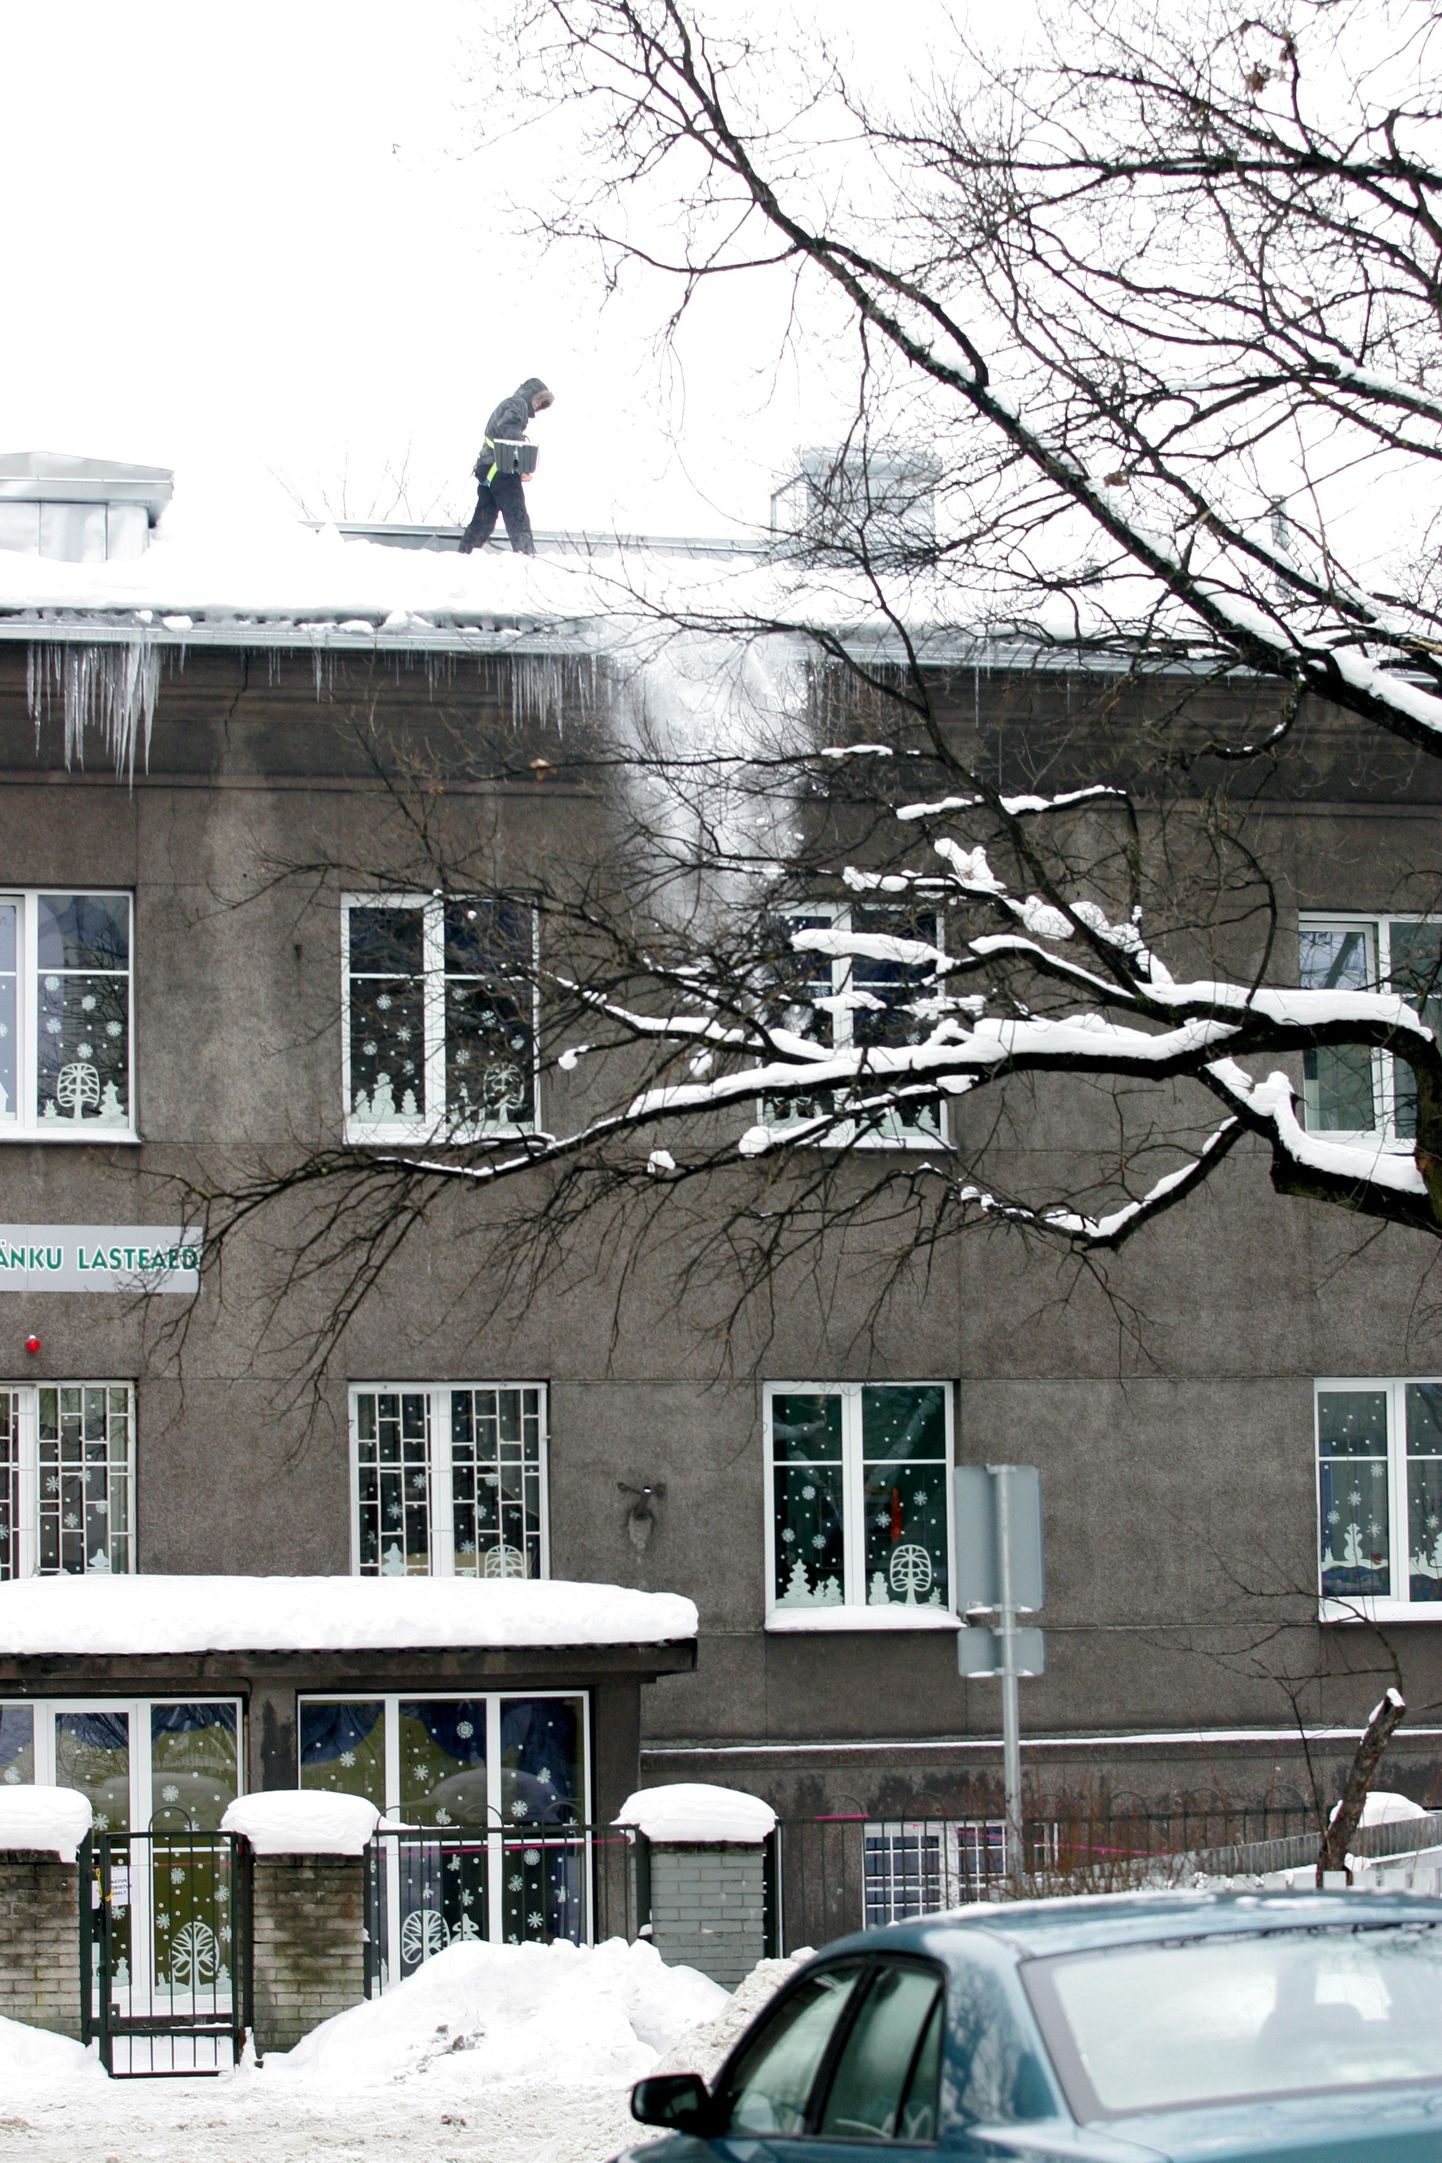 Päikesejänku lasteaed Tallinnas jagas vanematele gripist hoidumise soovitusi. Pildil lume lükkamine lasteaia katuselt.